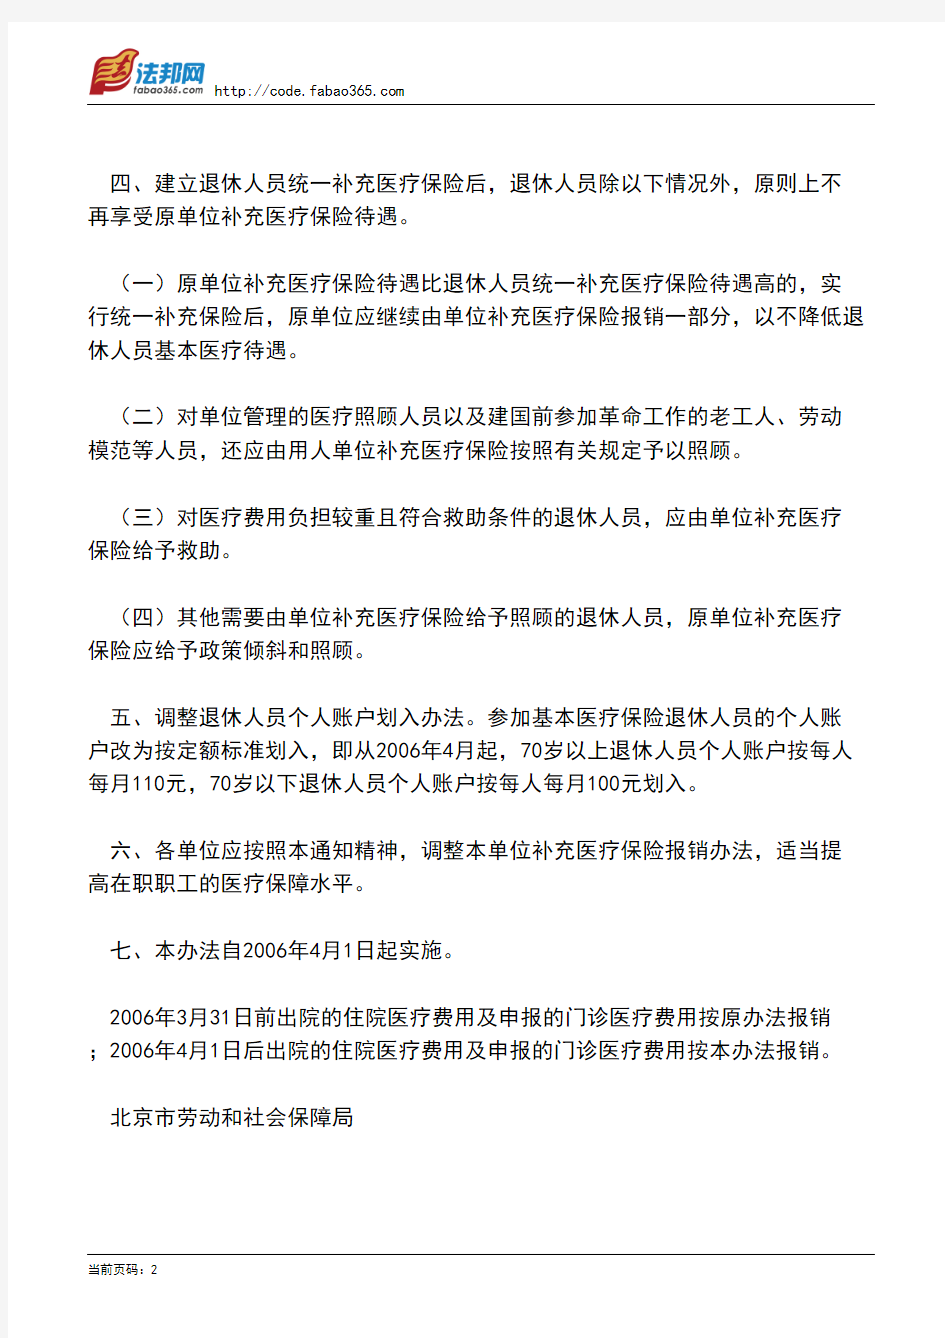 北京市劳动和社会保障局关于建立全市退休人员统一补充医疗保险的通知